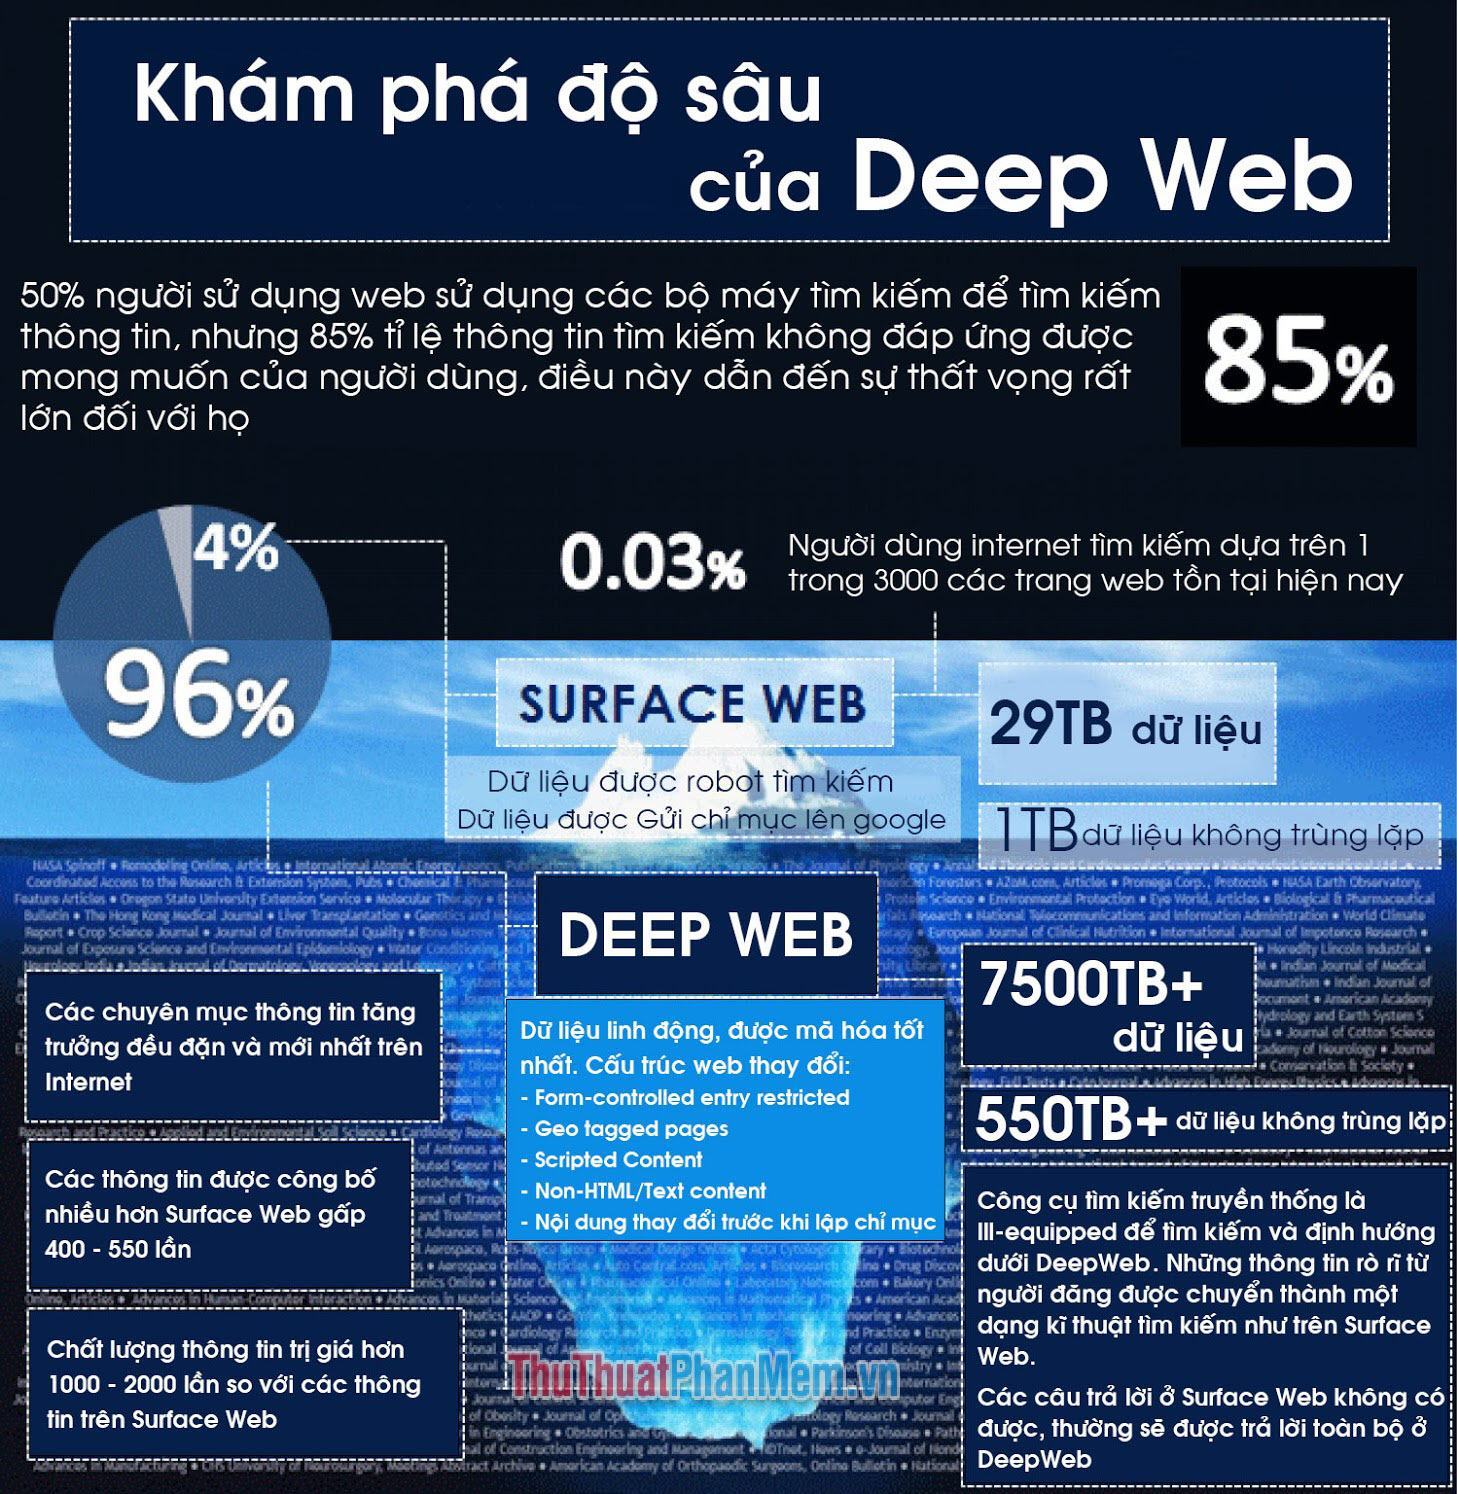 Các cấp độ của Deep Web